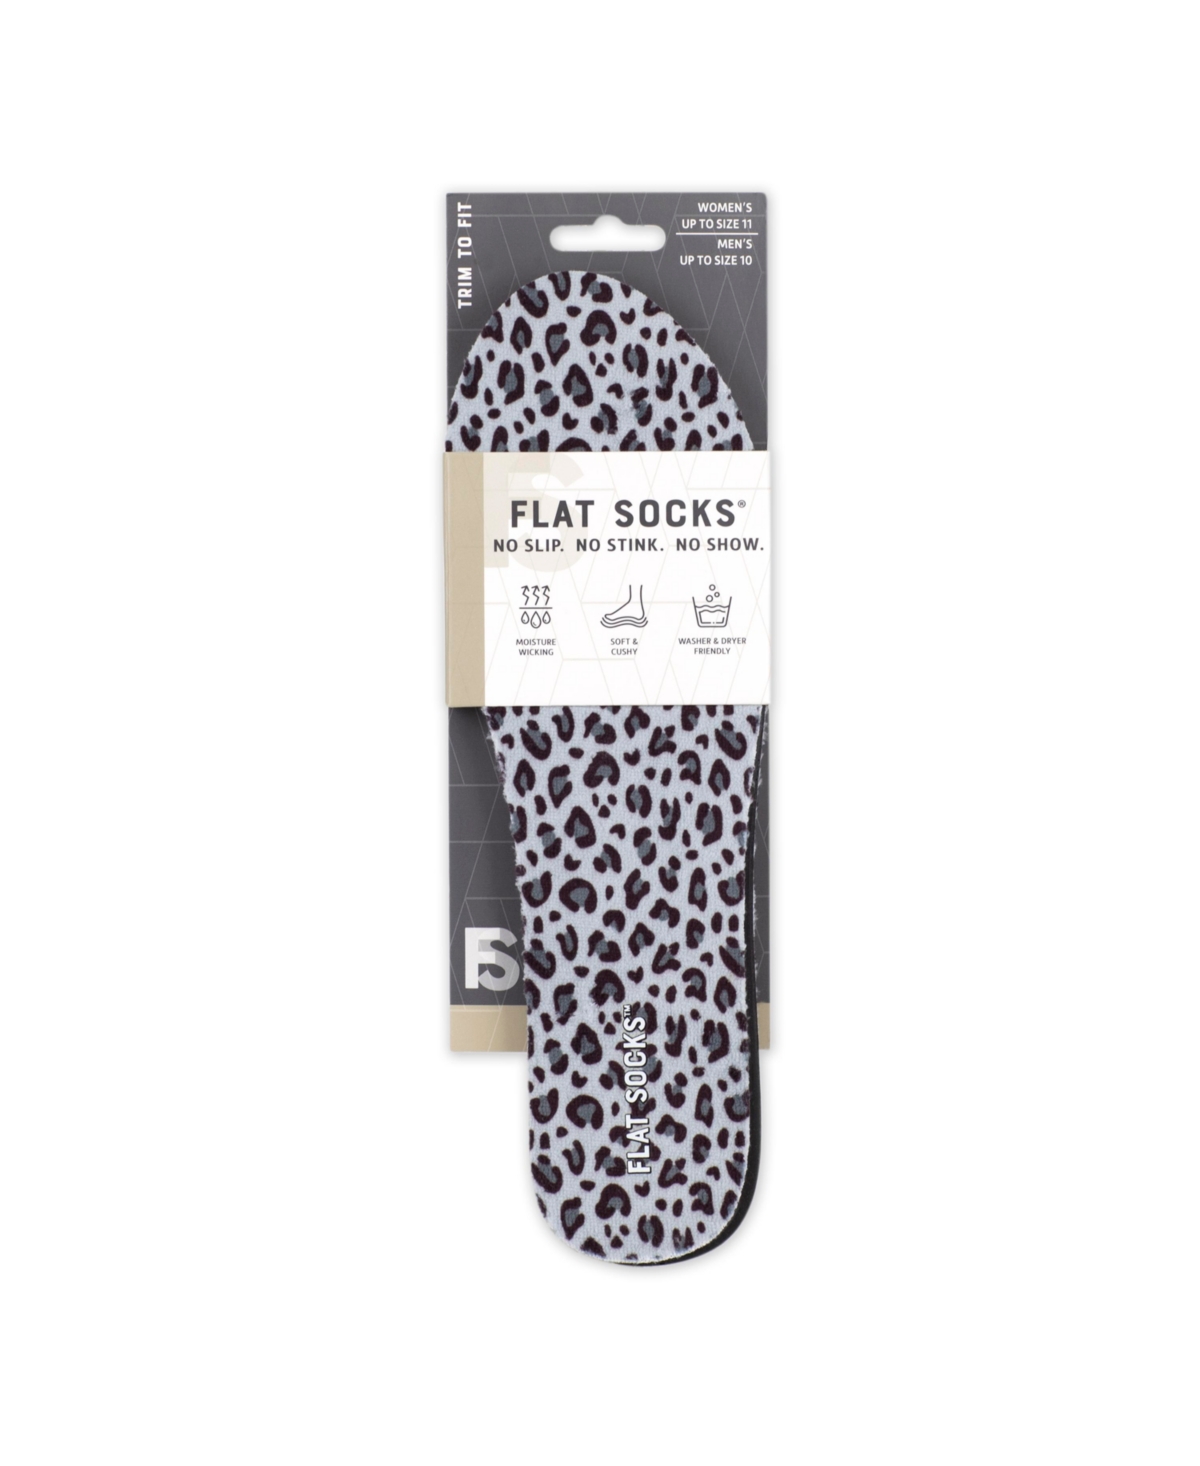 Foot Petals Women's Black, Leopard, Snow Leopard, Flat Socks Women's Shoes